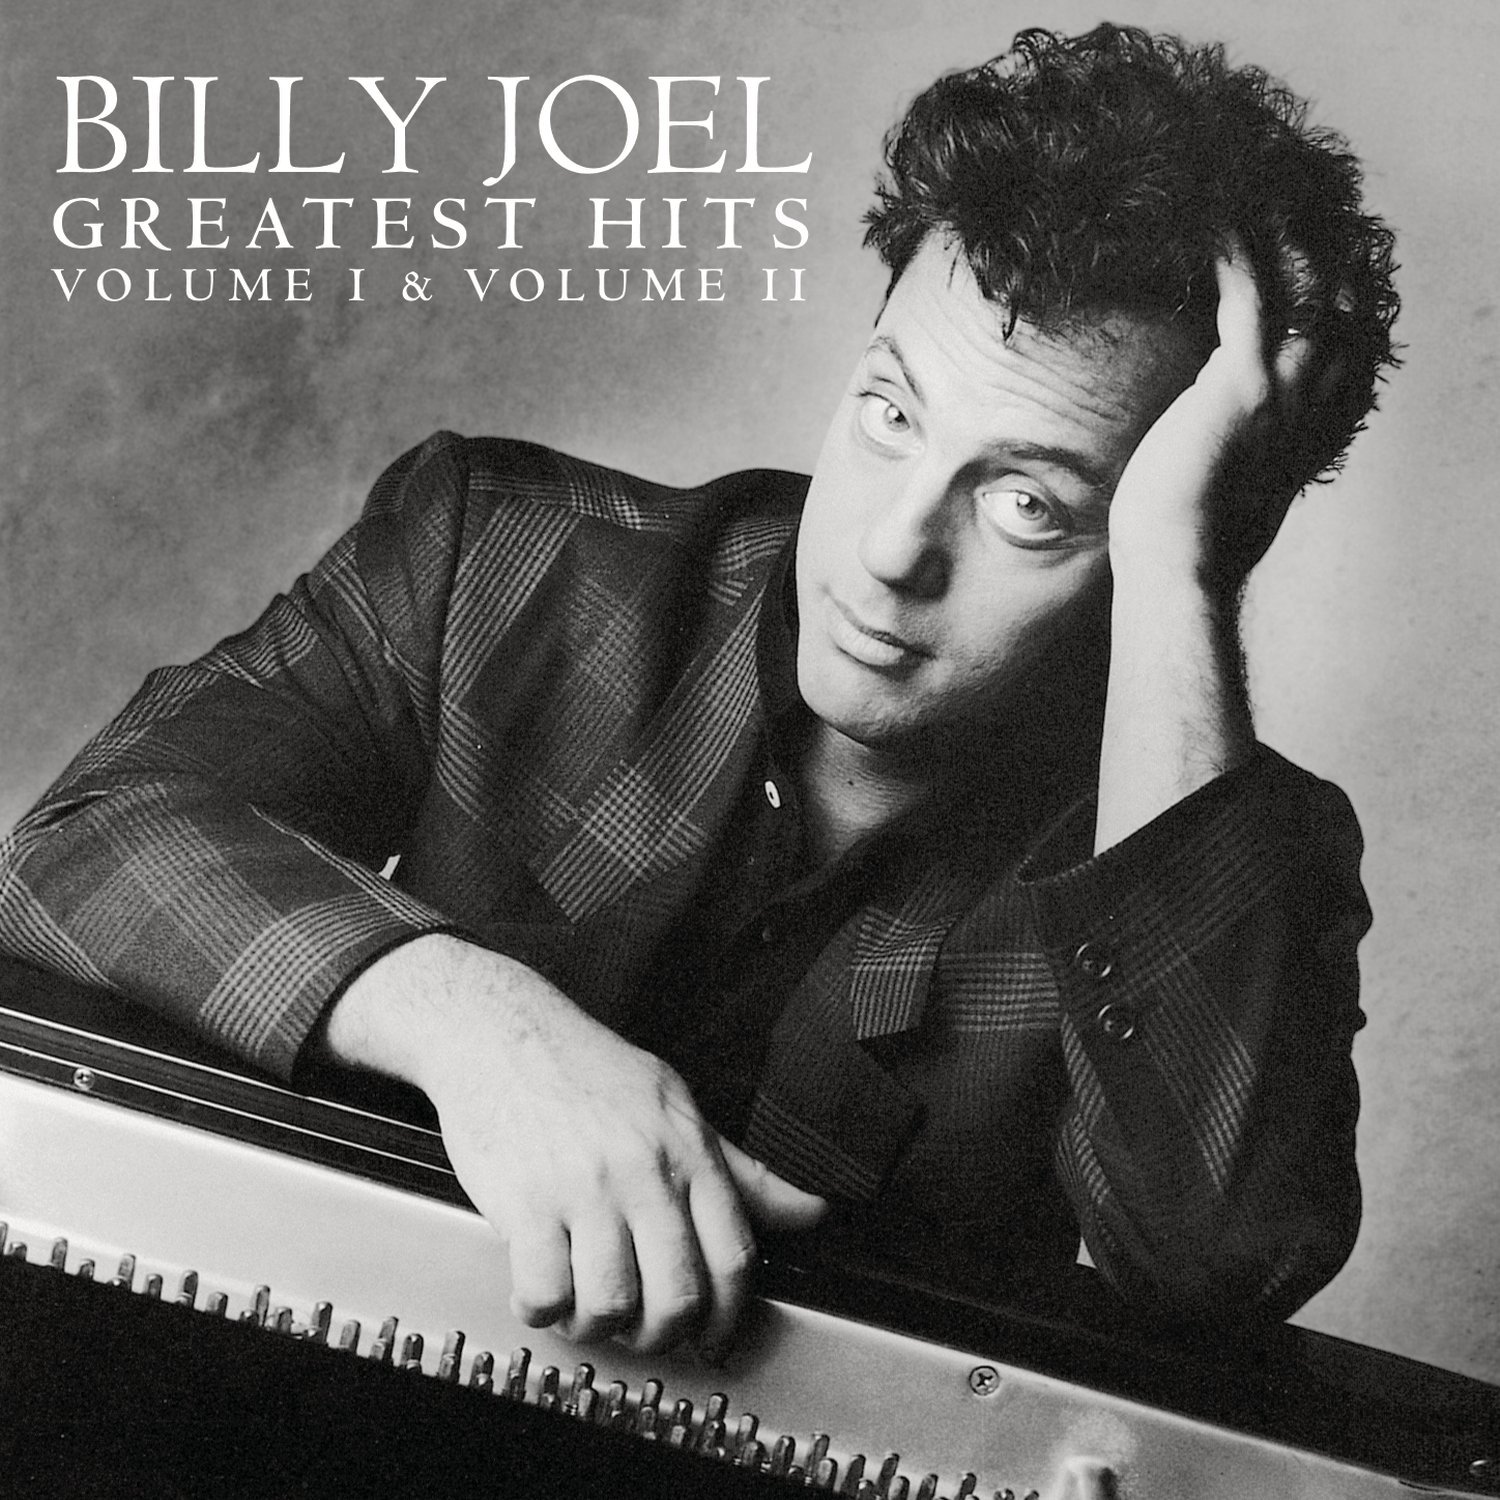 Billy Joel「Just The Way You Are（素顔のままで）」サックスソロをギターで弾いてみる